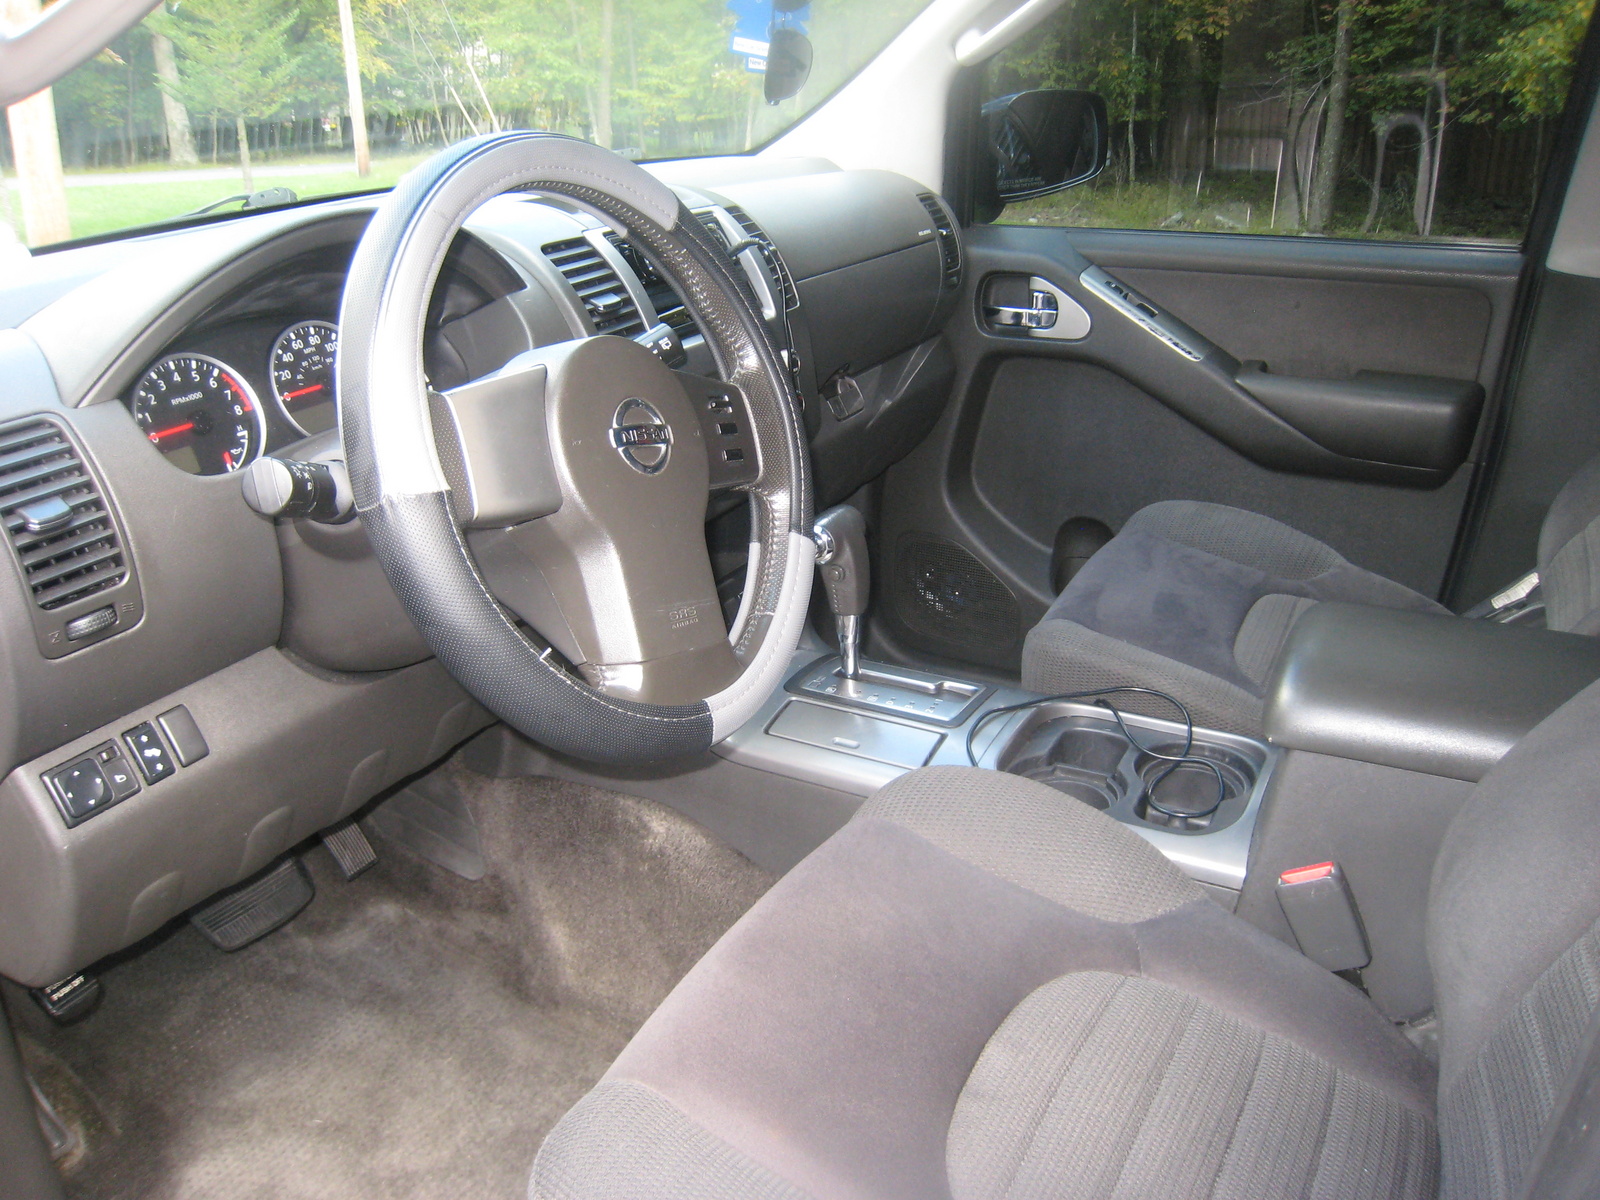 2005 Nissan pathfinder se interior #7